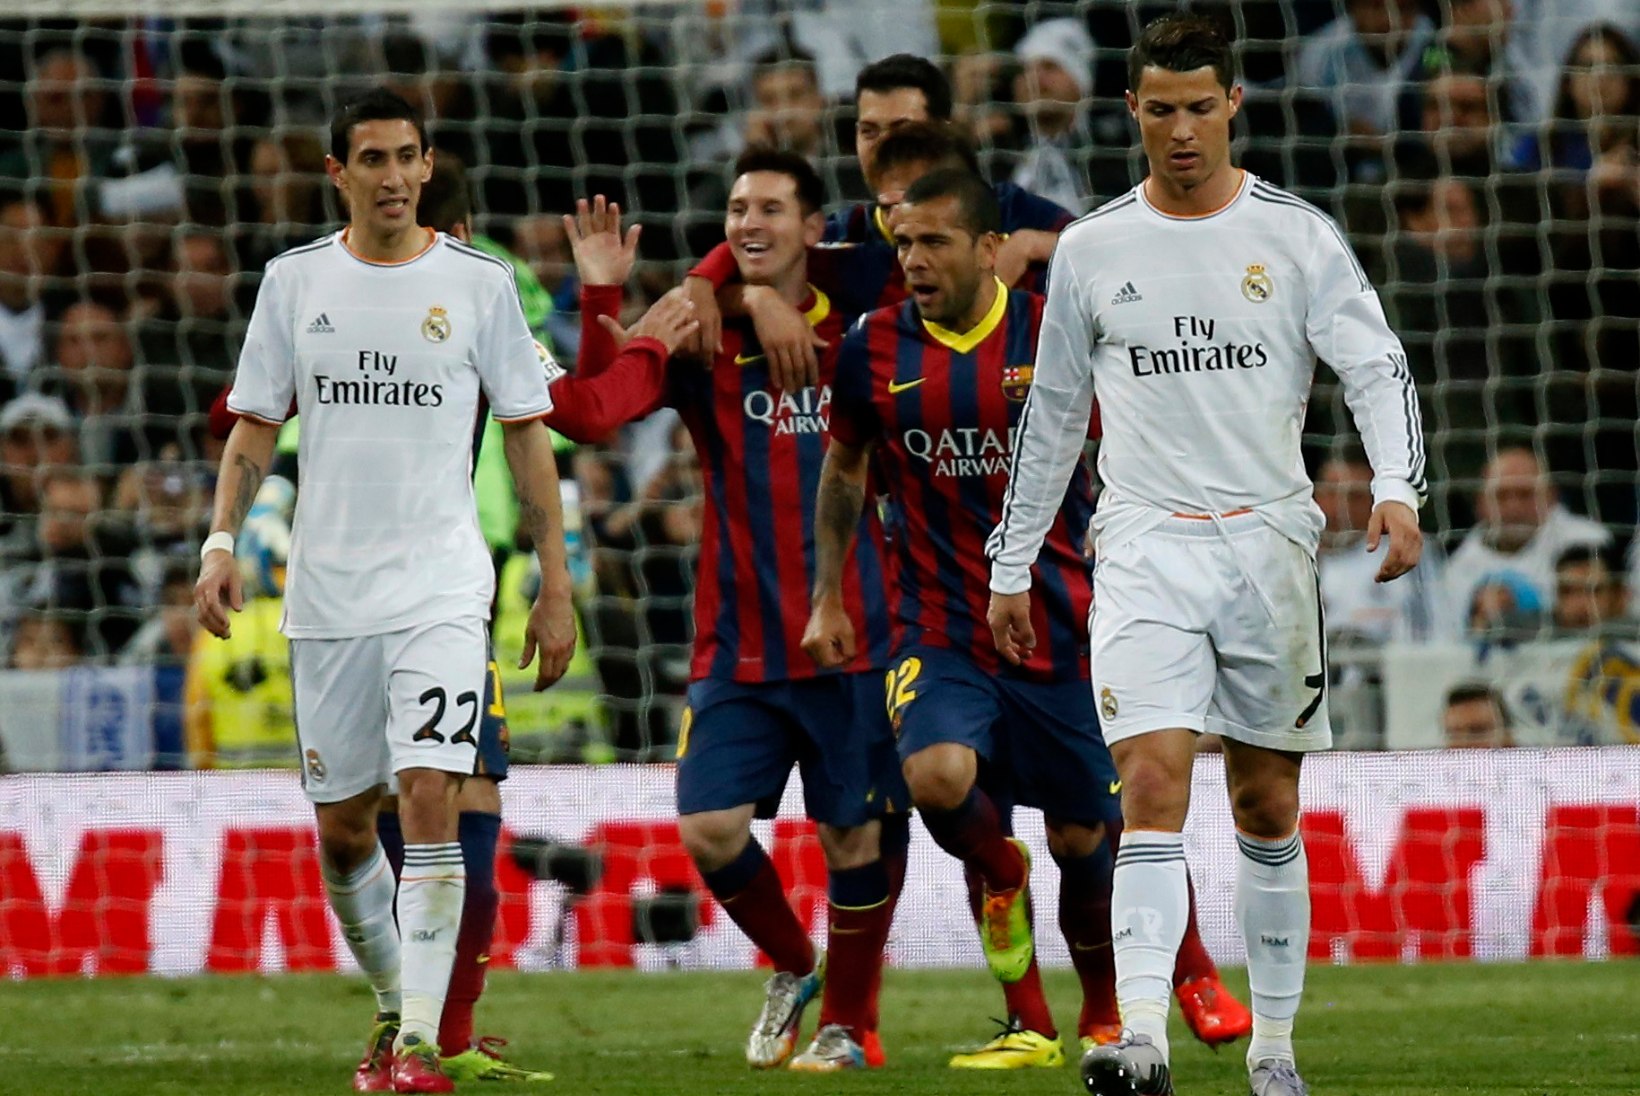 Hispaania karikafinaal Madridi Real – FC Barcelona, kes vajab võitu rohkem?